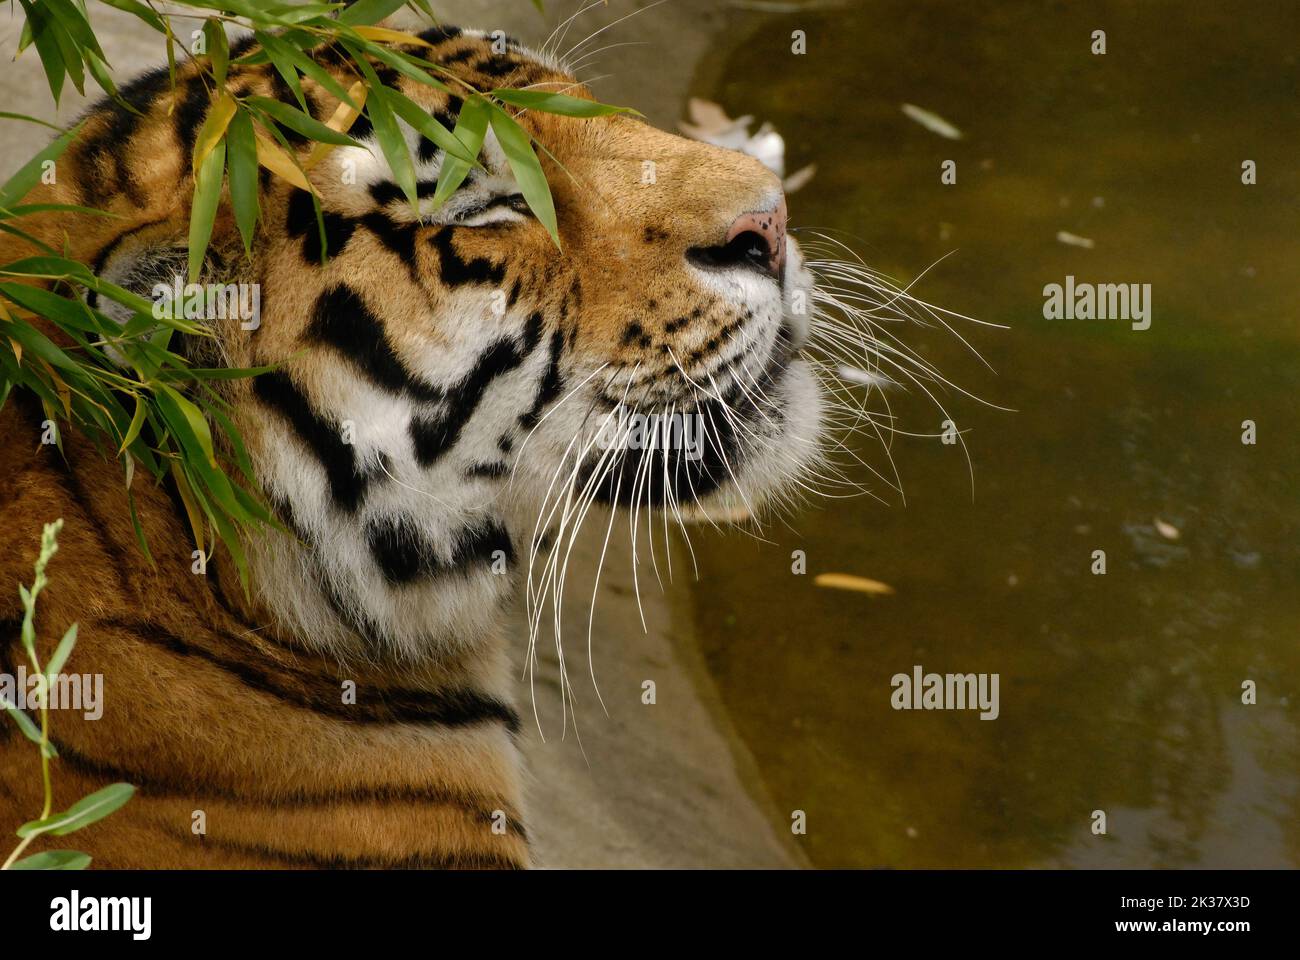 Un primo piano di una tigre di amur che beve da uno stagno Foto Stock